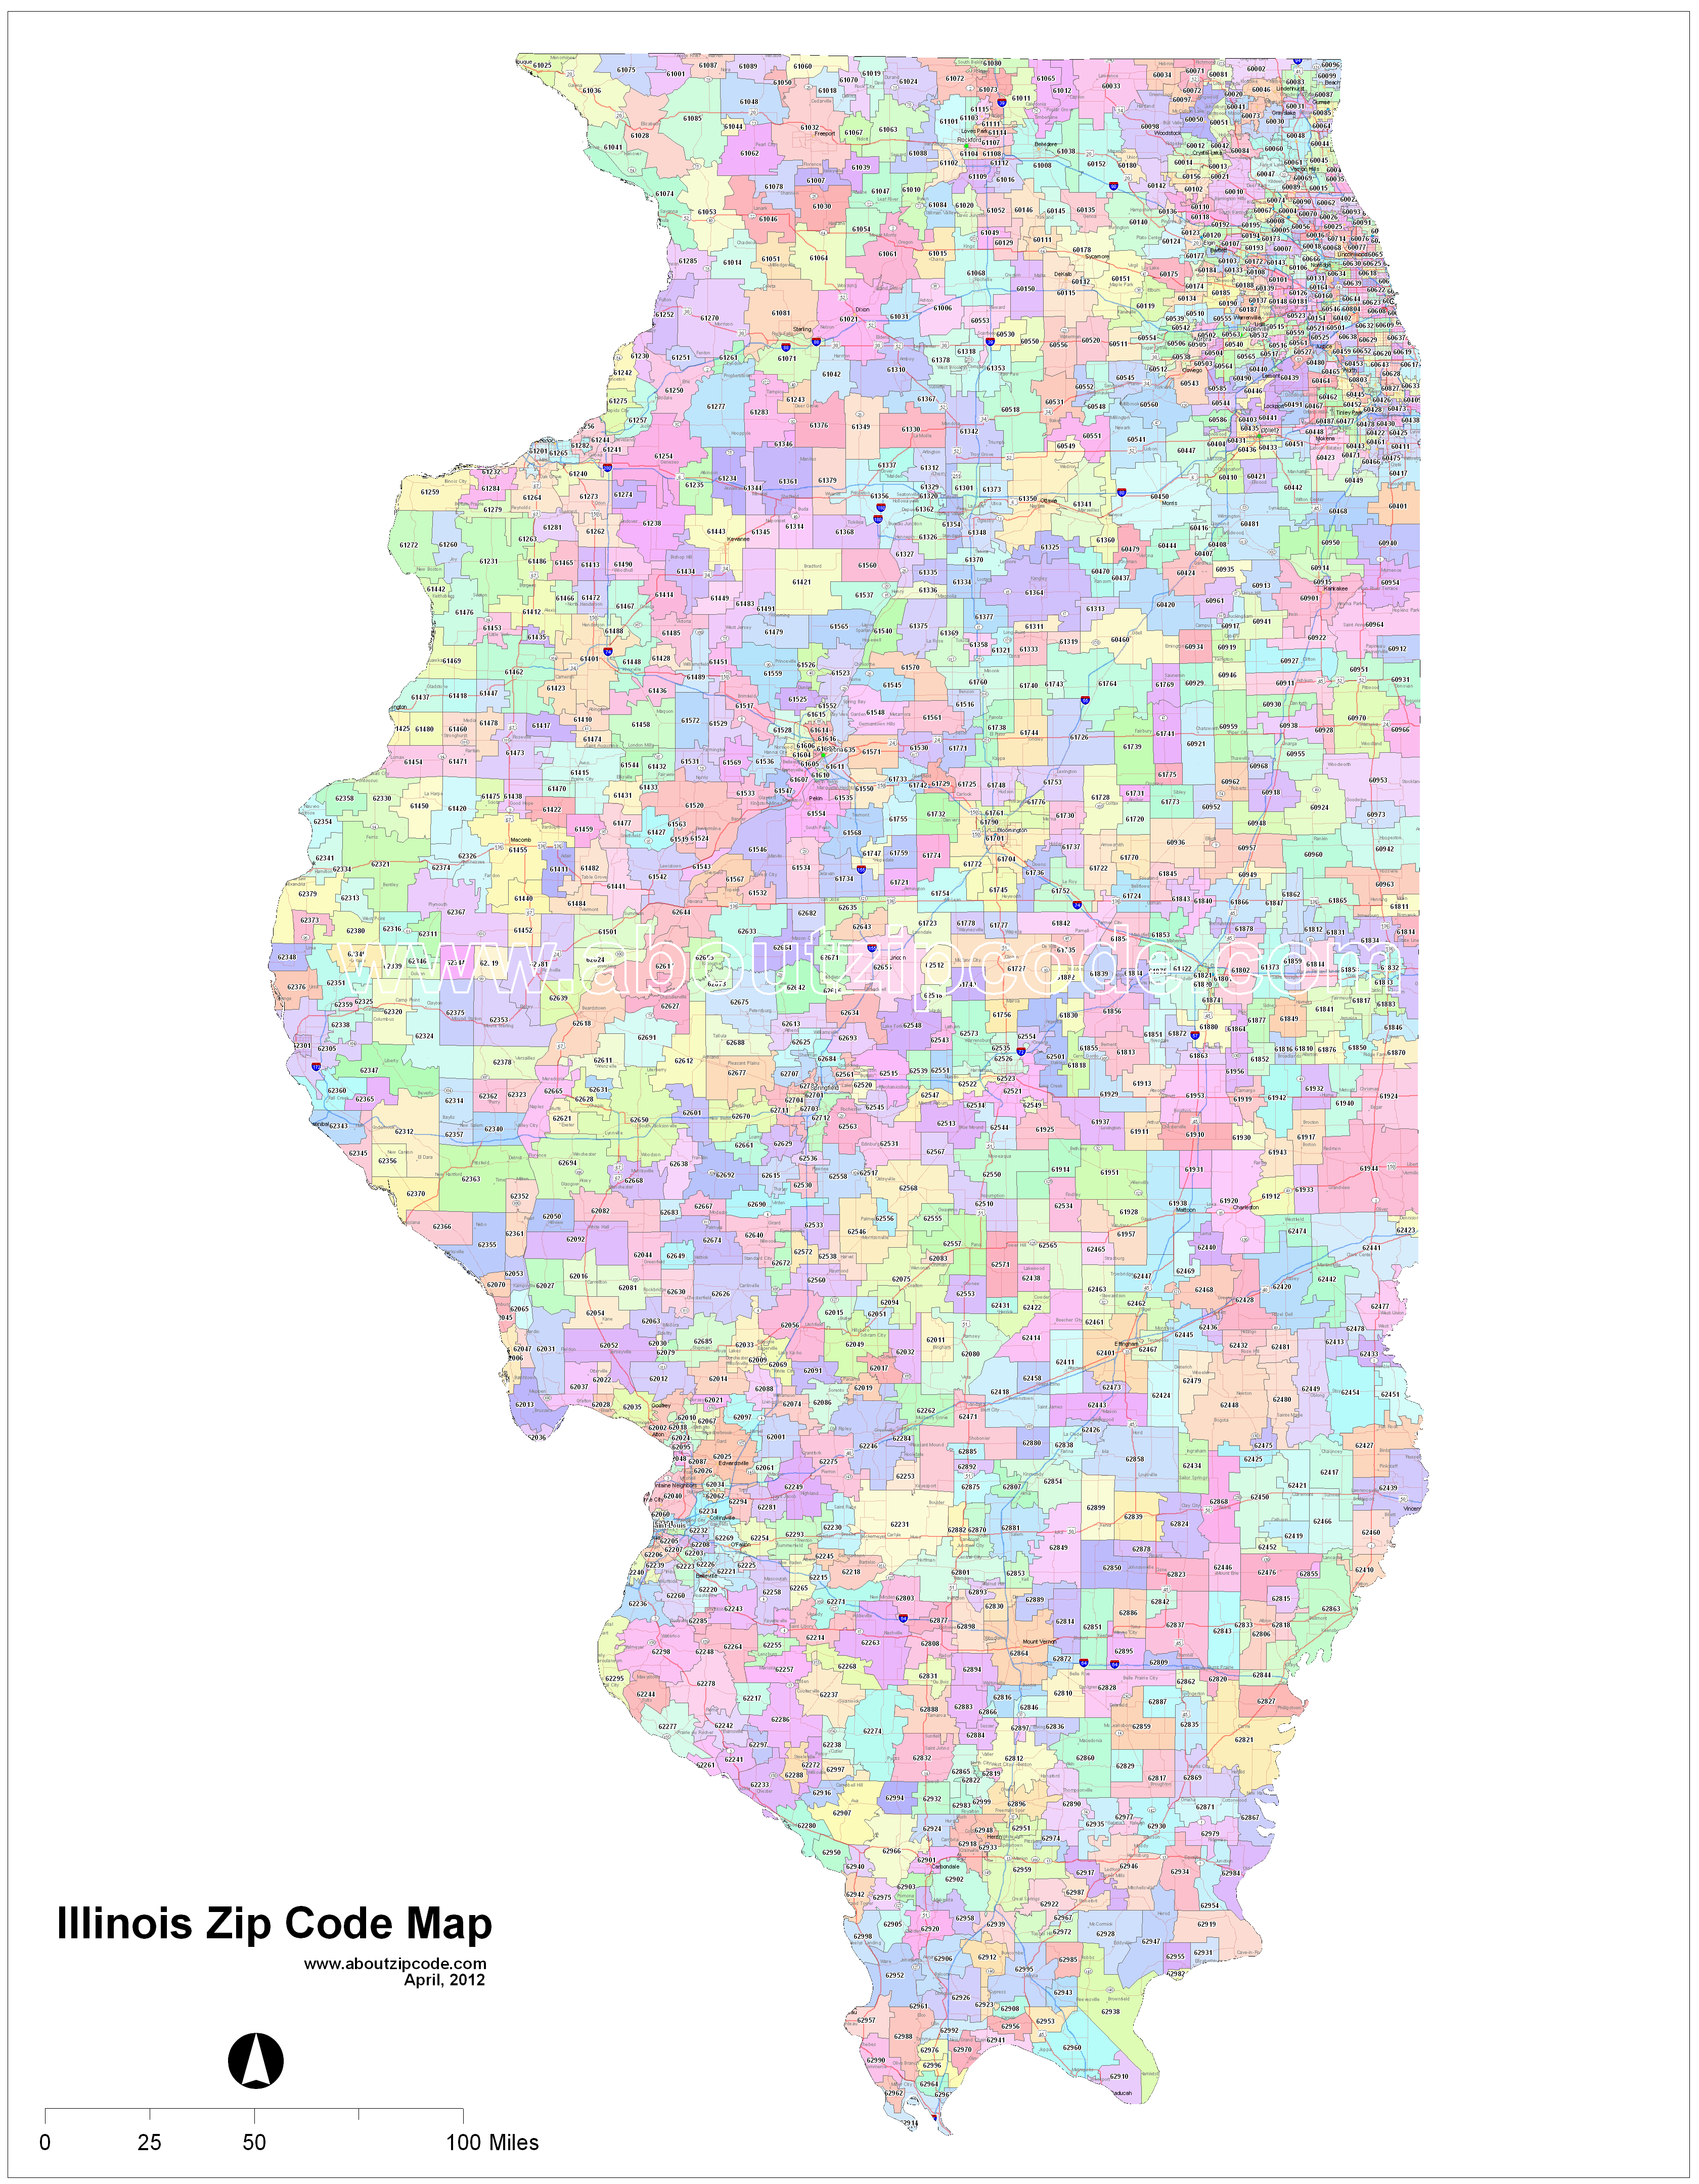 Southern Illinois Zip Code Map Illinois Zip Code Maps - Free Illinois Zip Code Maps